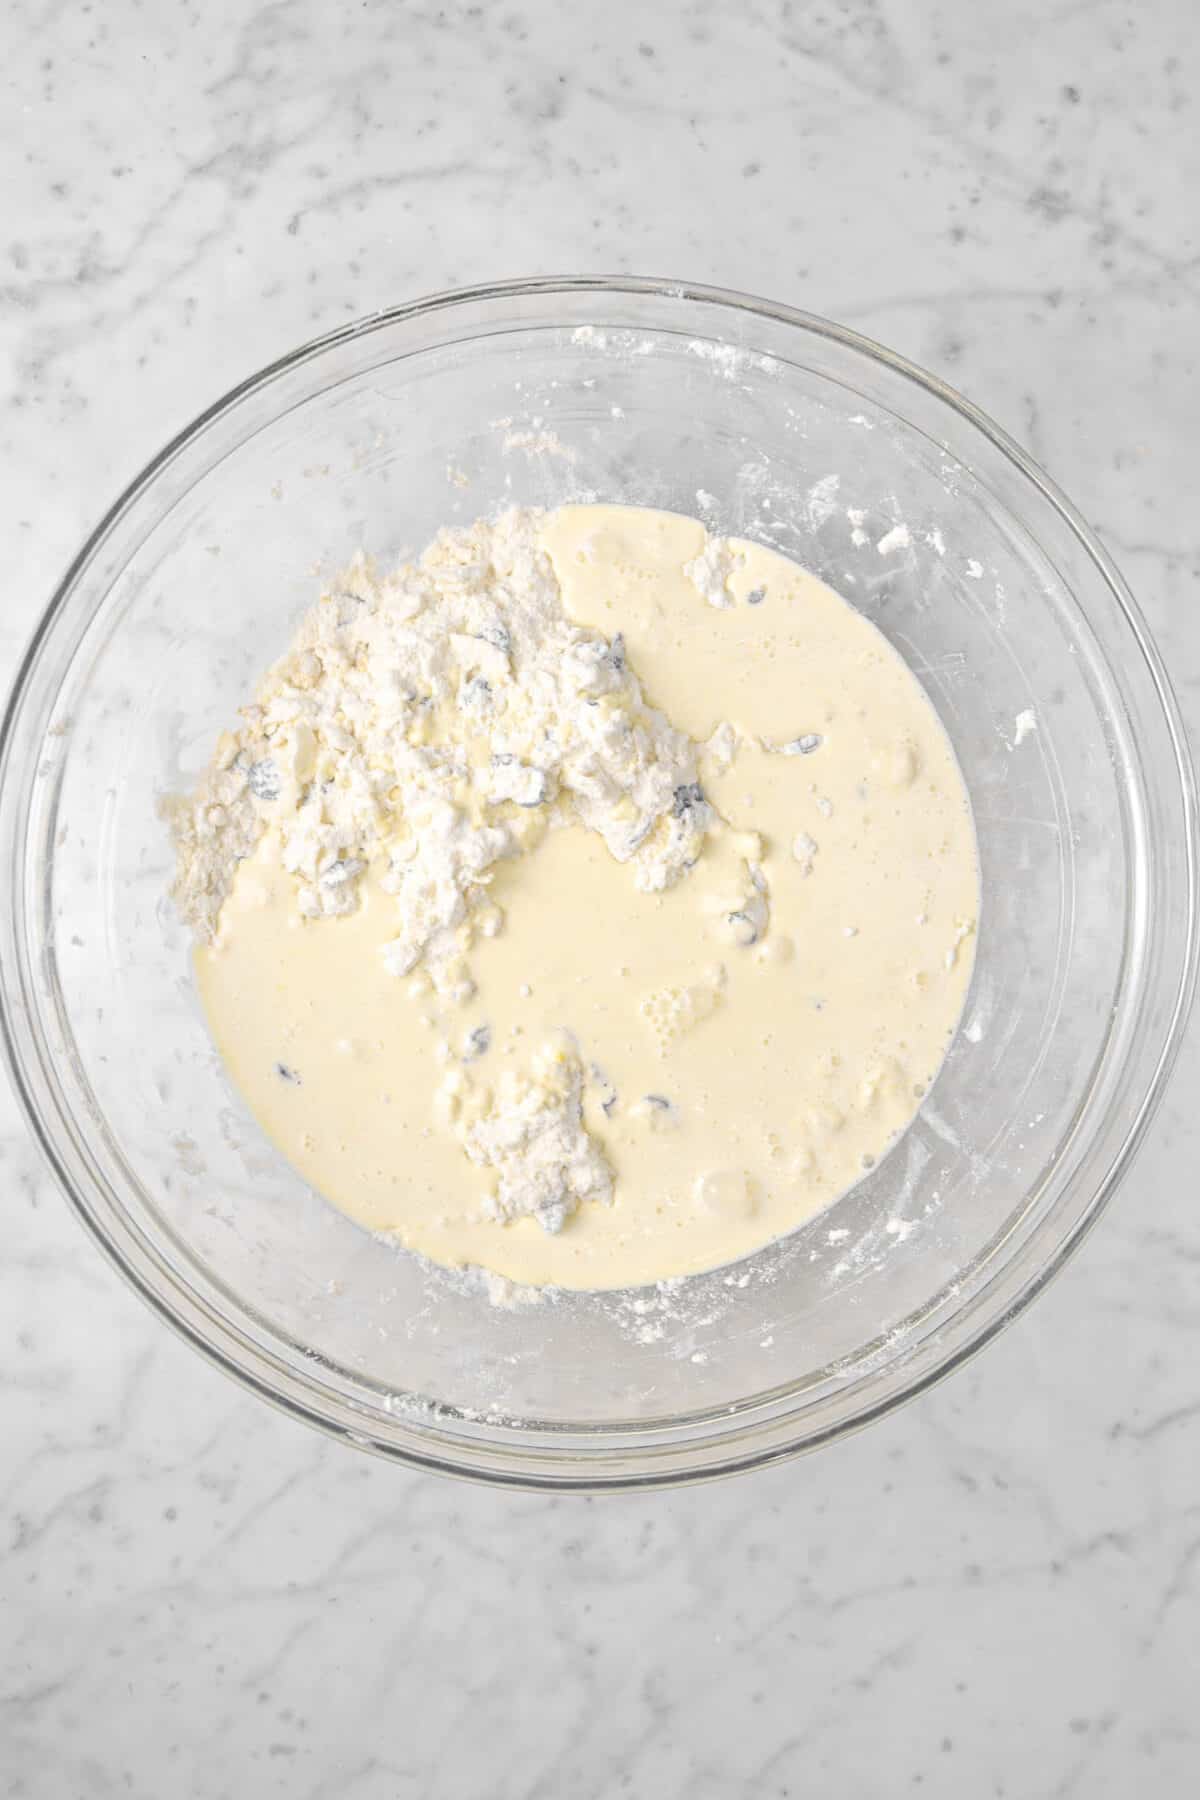 wet ingredients on top of flour mixture